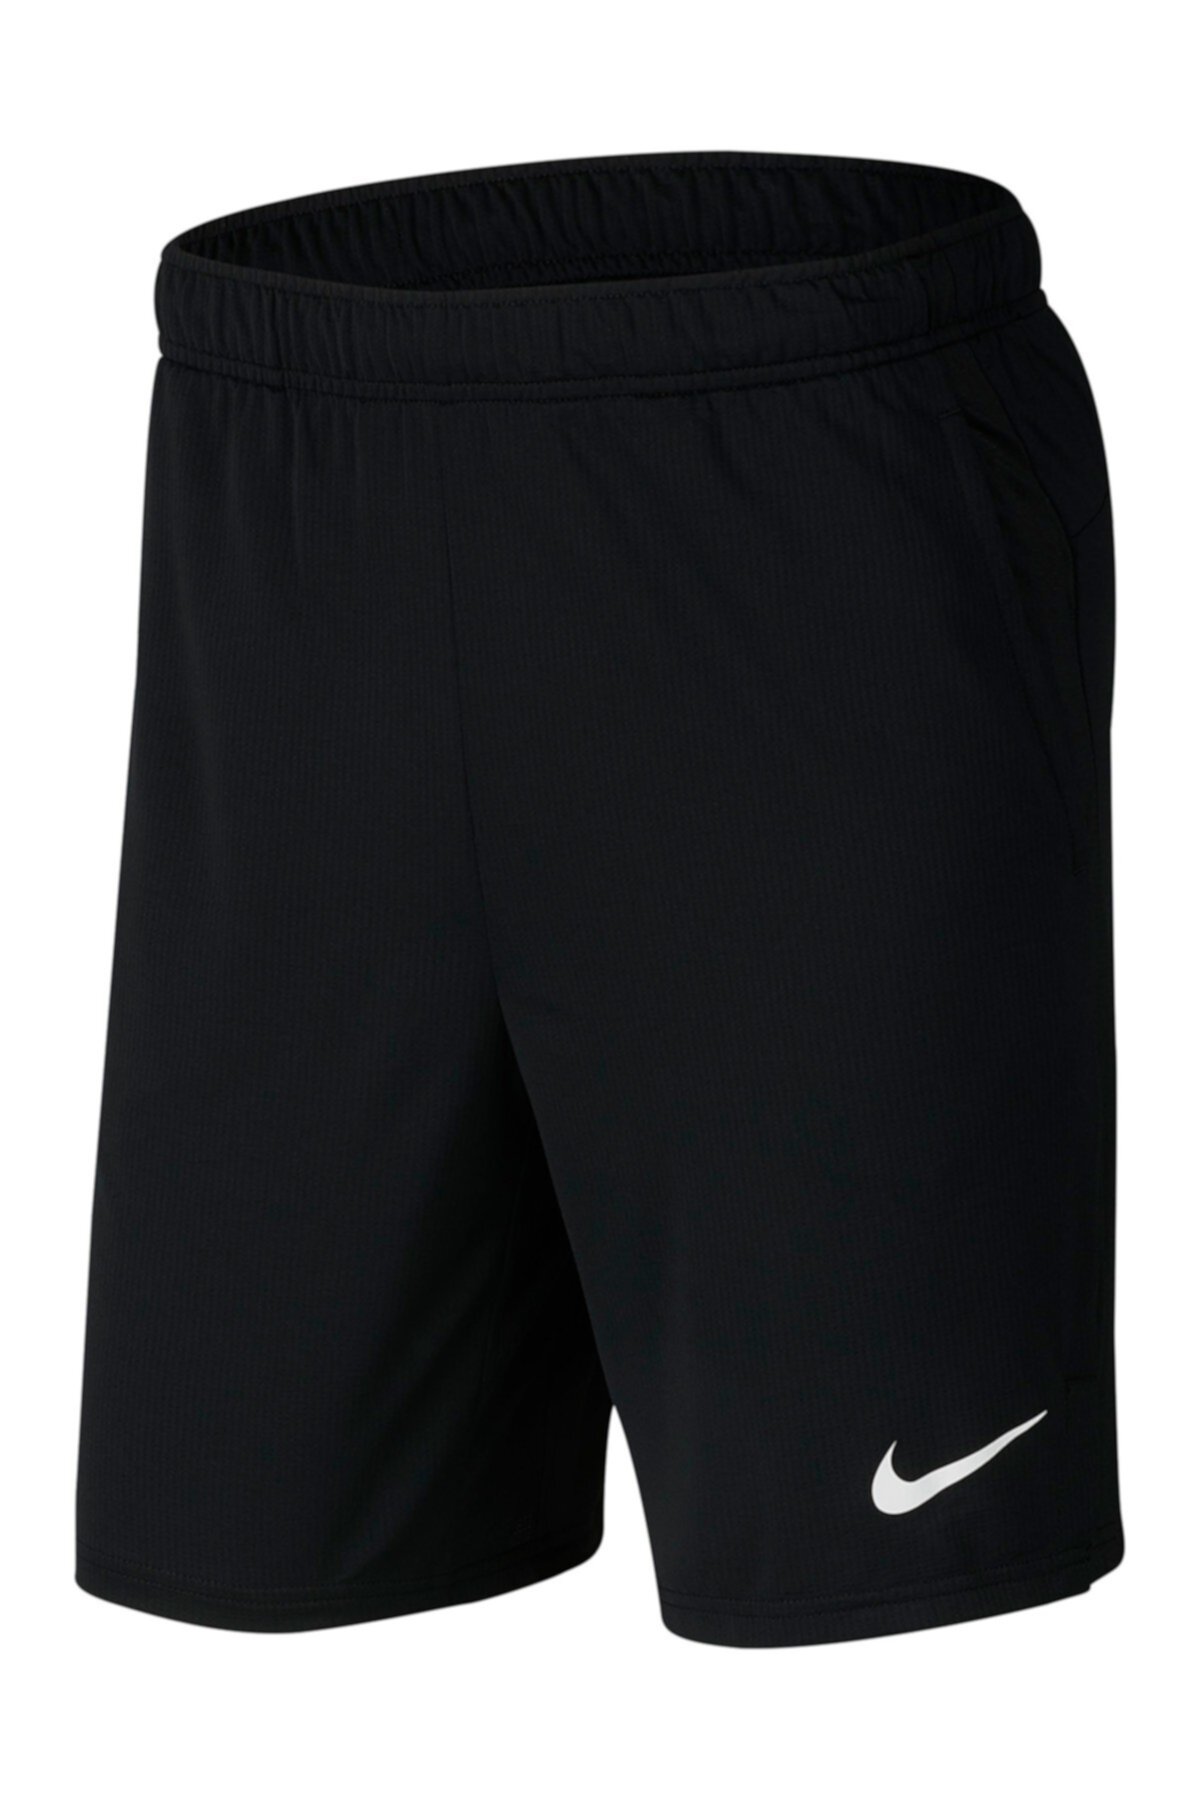 Гибридные шорты Dri-FIT 2.0 Nike